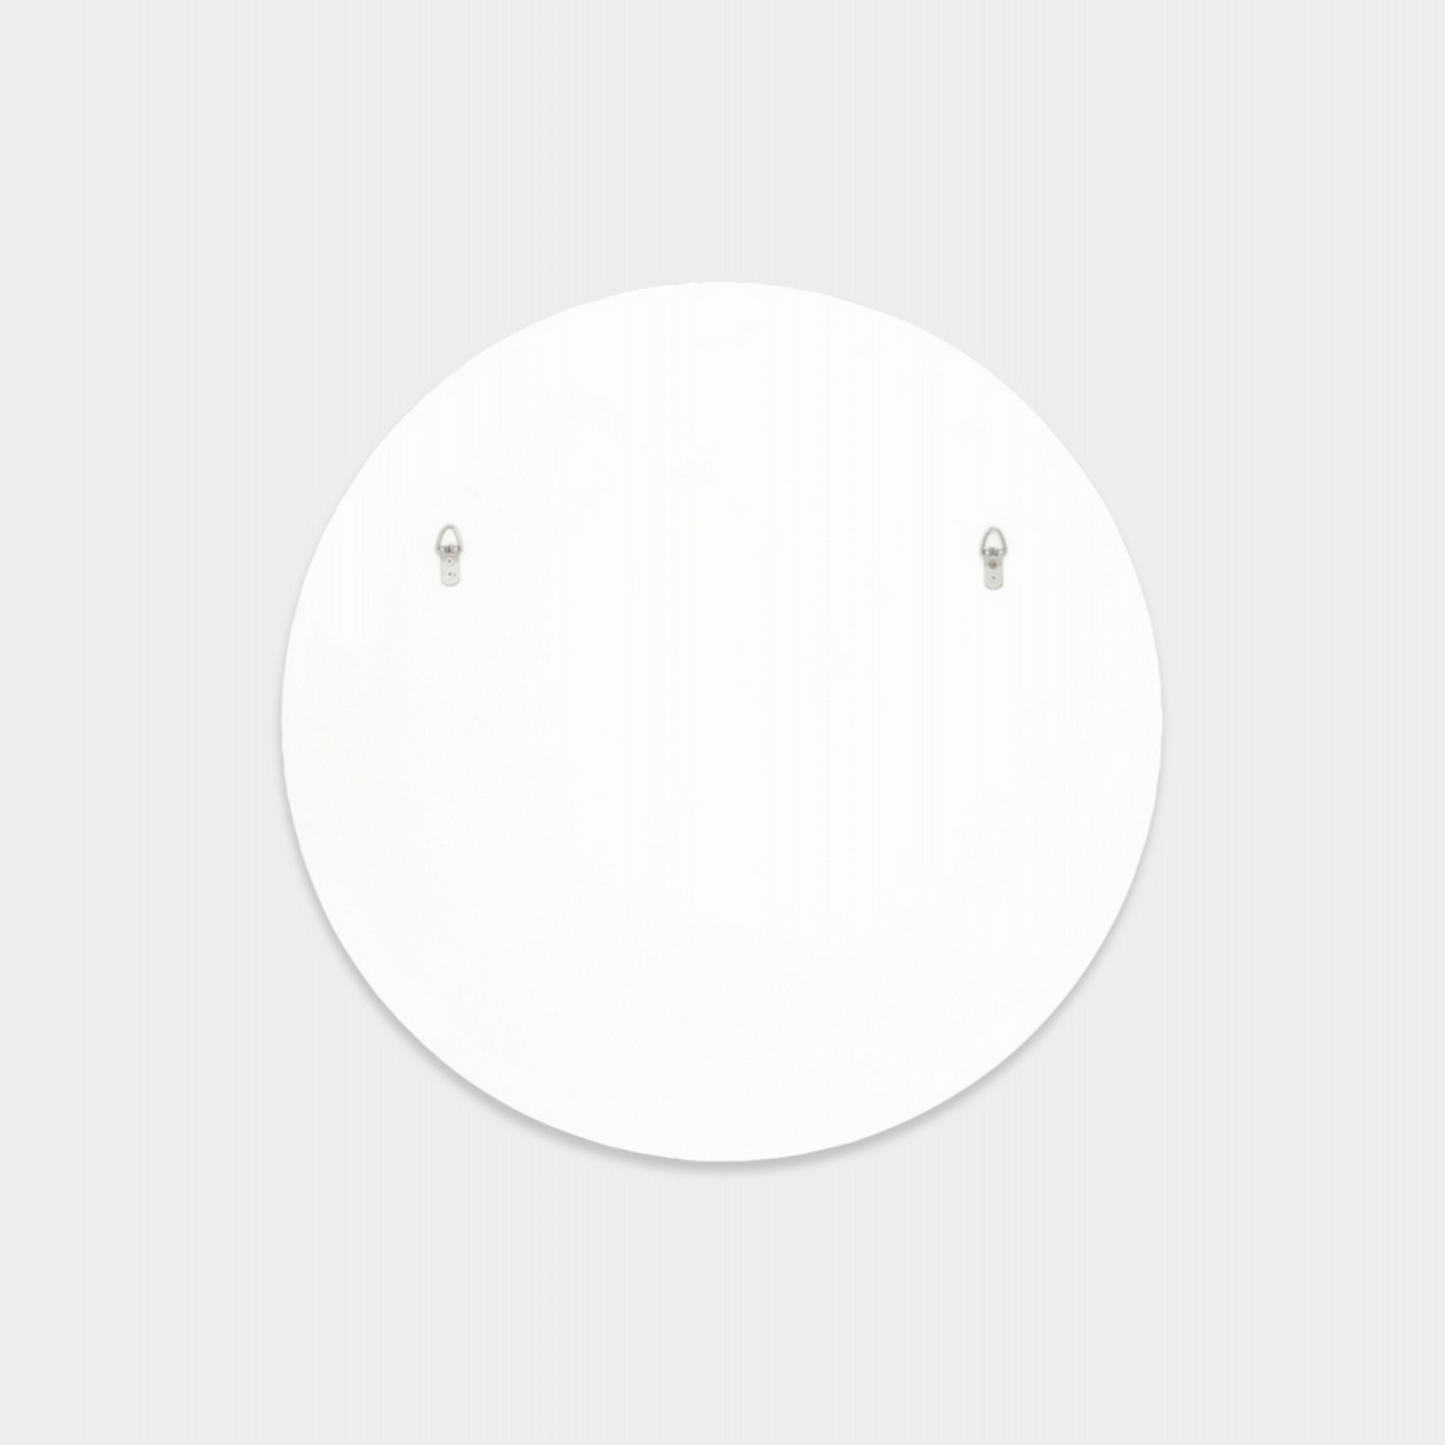 Bjorn Round Mirror - Bright White 100cm